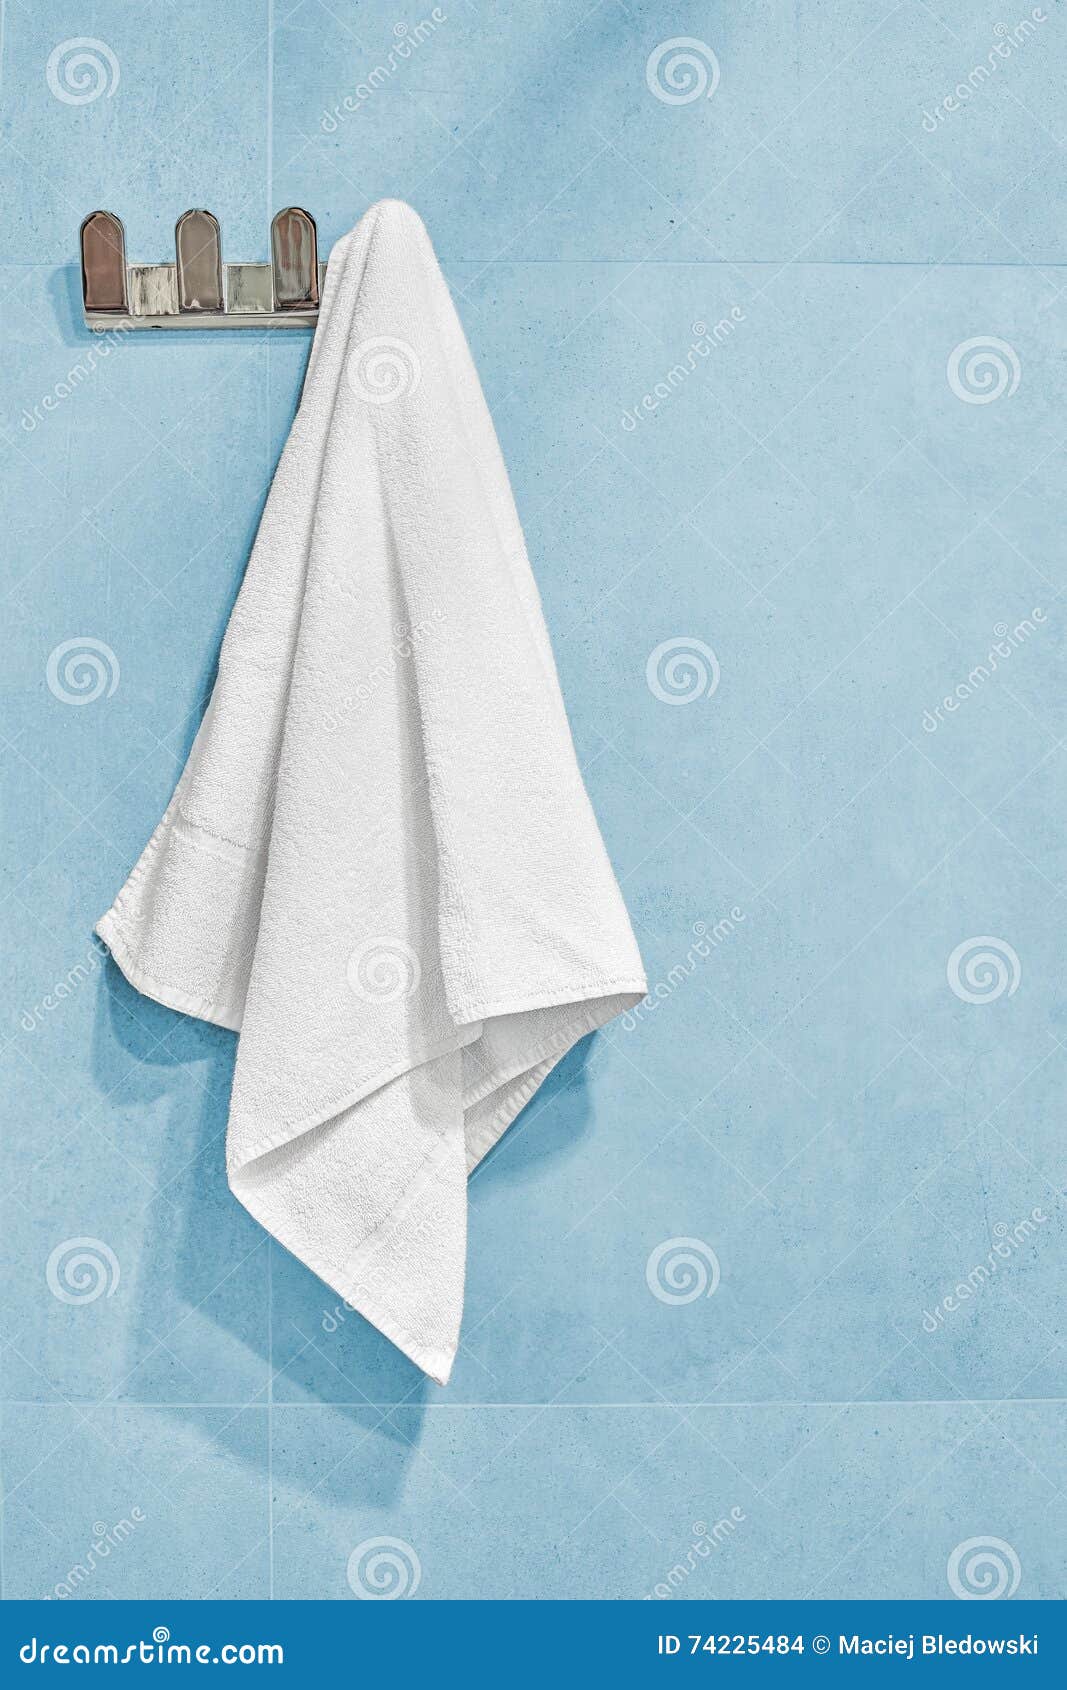 Полотенце висит. Полотенце висит на стене. Белое полотенце висит. Полотенце на стене. Полотенце весит